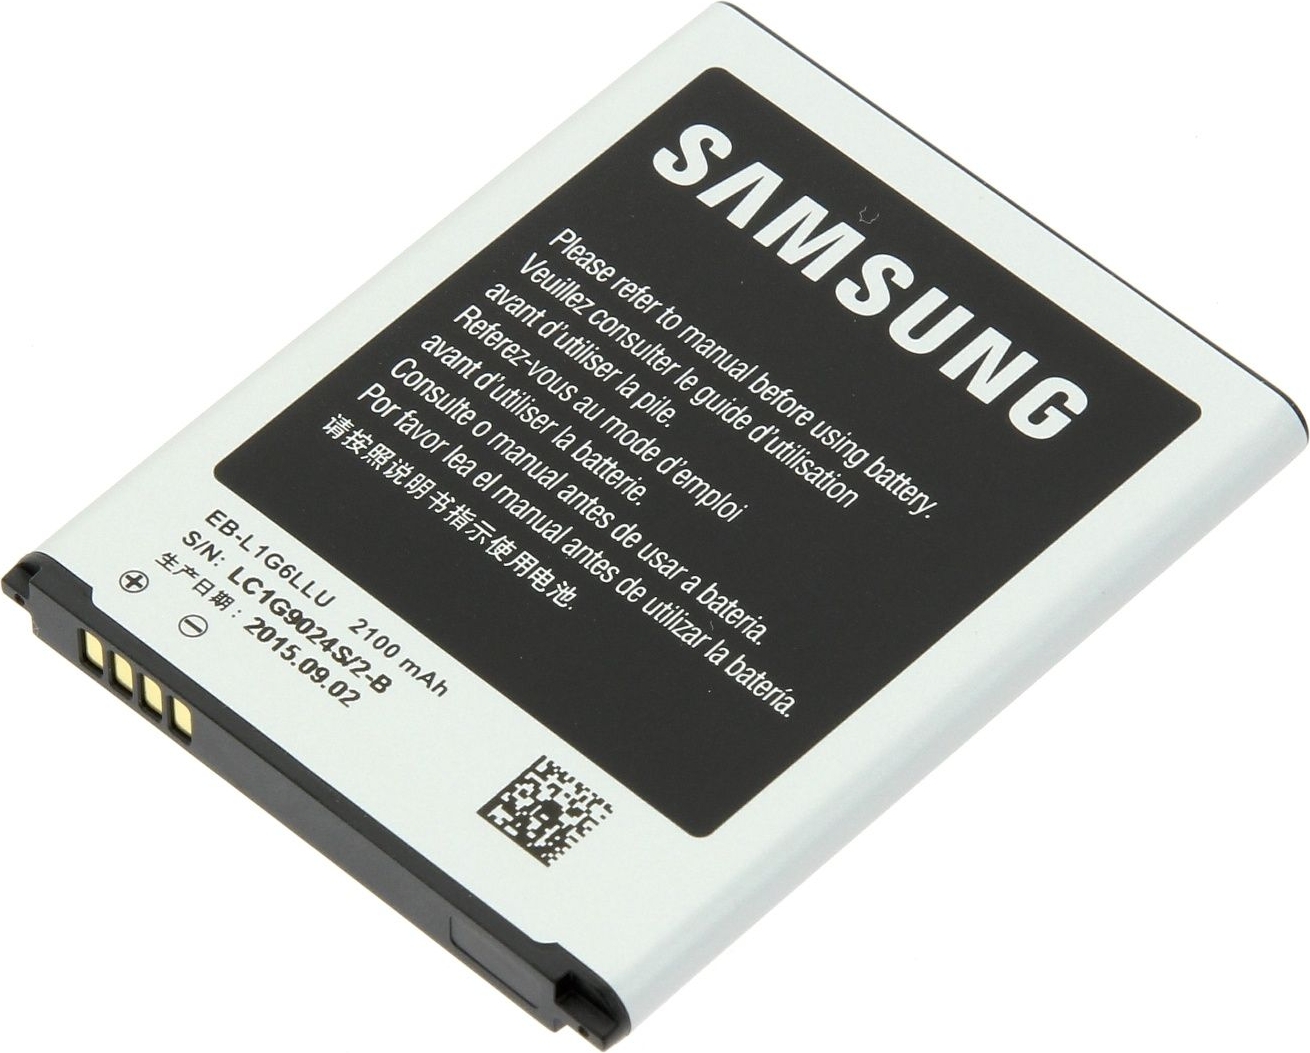 Vernietigen Mens Arabische Sarabo ᐅ • Samsung batterij origineel - EB-L1G6LLU | Snel en Goedkoop:  PhoneGigant.nl